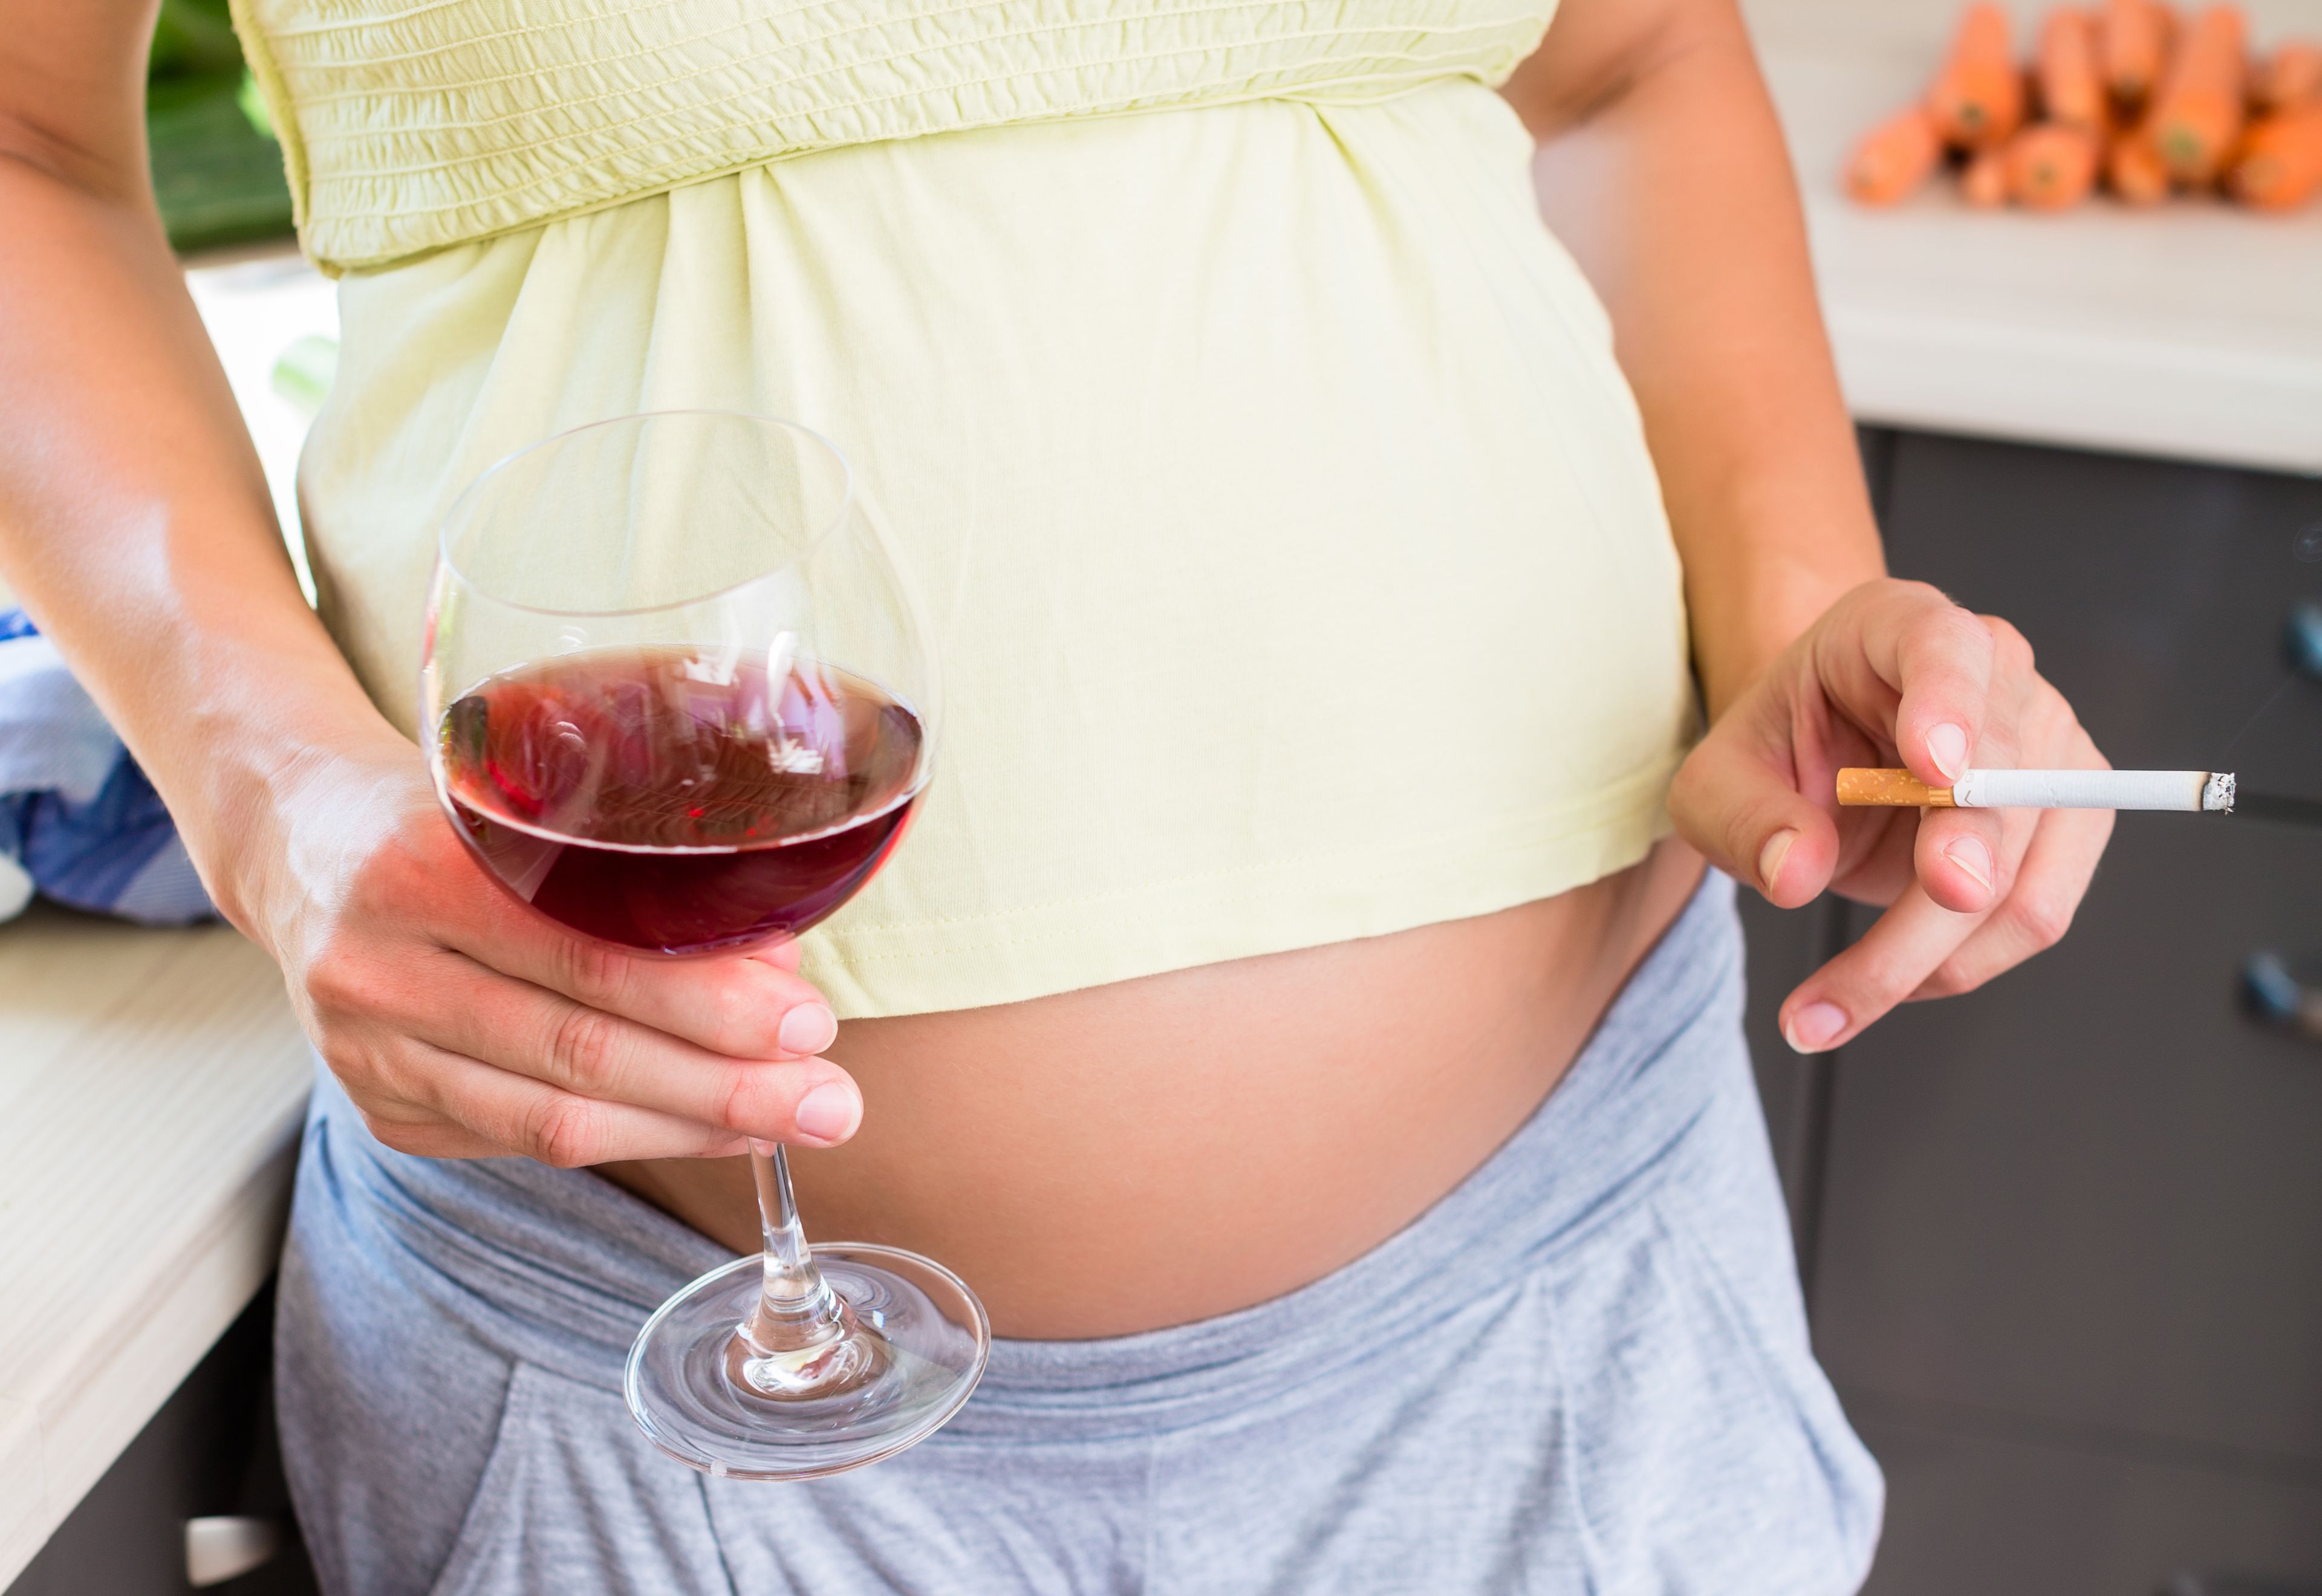 IKKE TRYGT: Å drikke alkohol eller røyke når du er gravid kan være skadelig for barnet, og kan føre til hjerneskader og misdannelser hos fosteret. Foto: colourbox